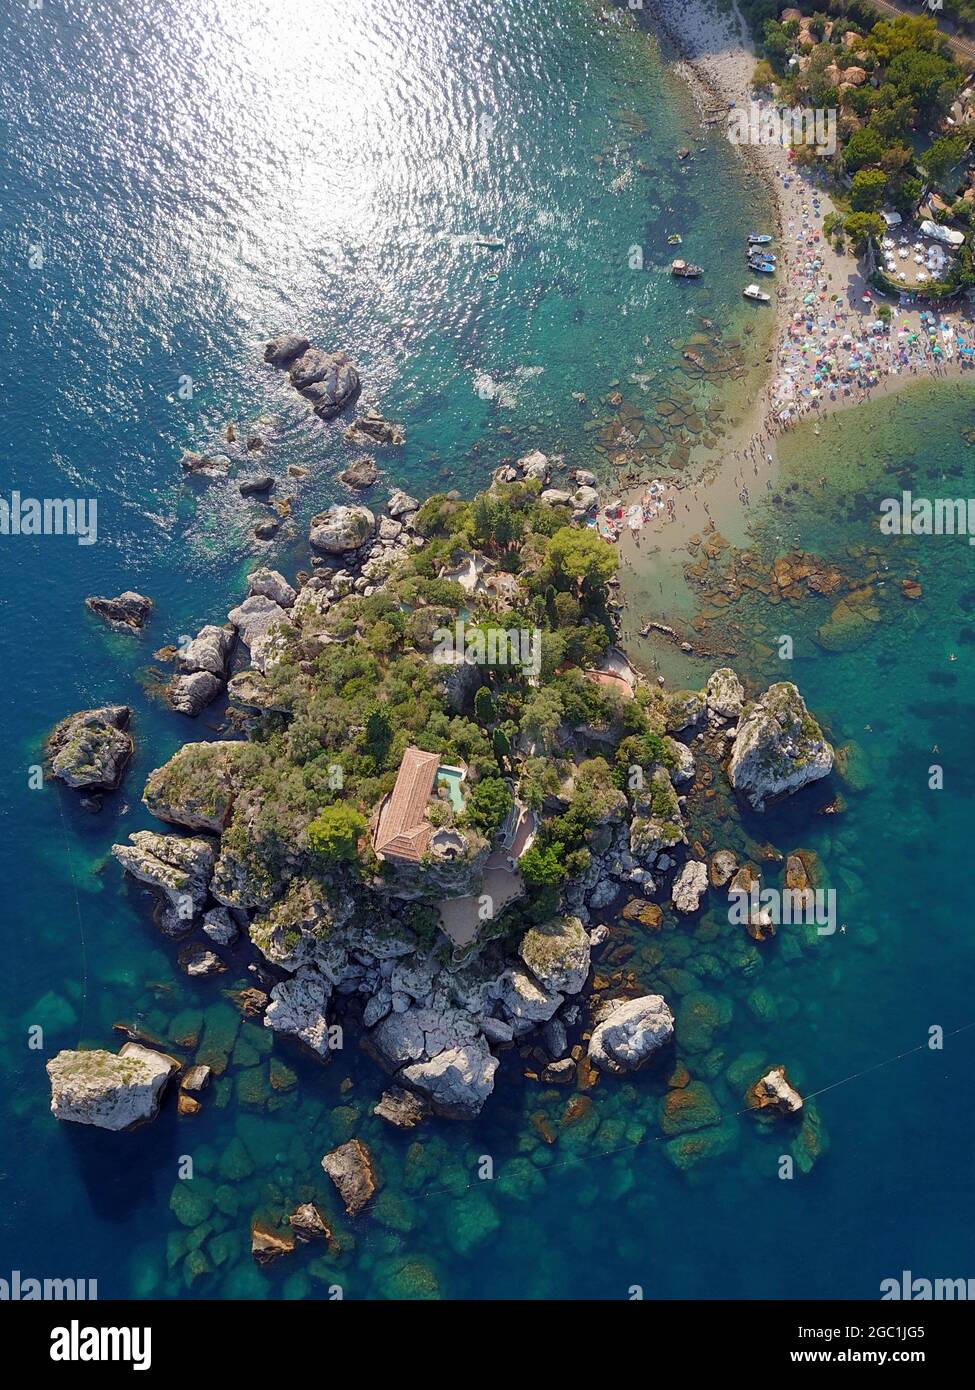 Italia, Sicilia, Catania, Taormina, mare siciliano con spiaggia e isola Isola Bella Foto © Lorenzo Fiorani/Sintesi/Alamy Stock Foto Foto Stock